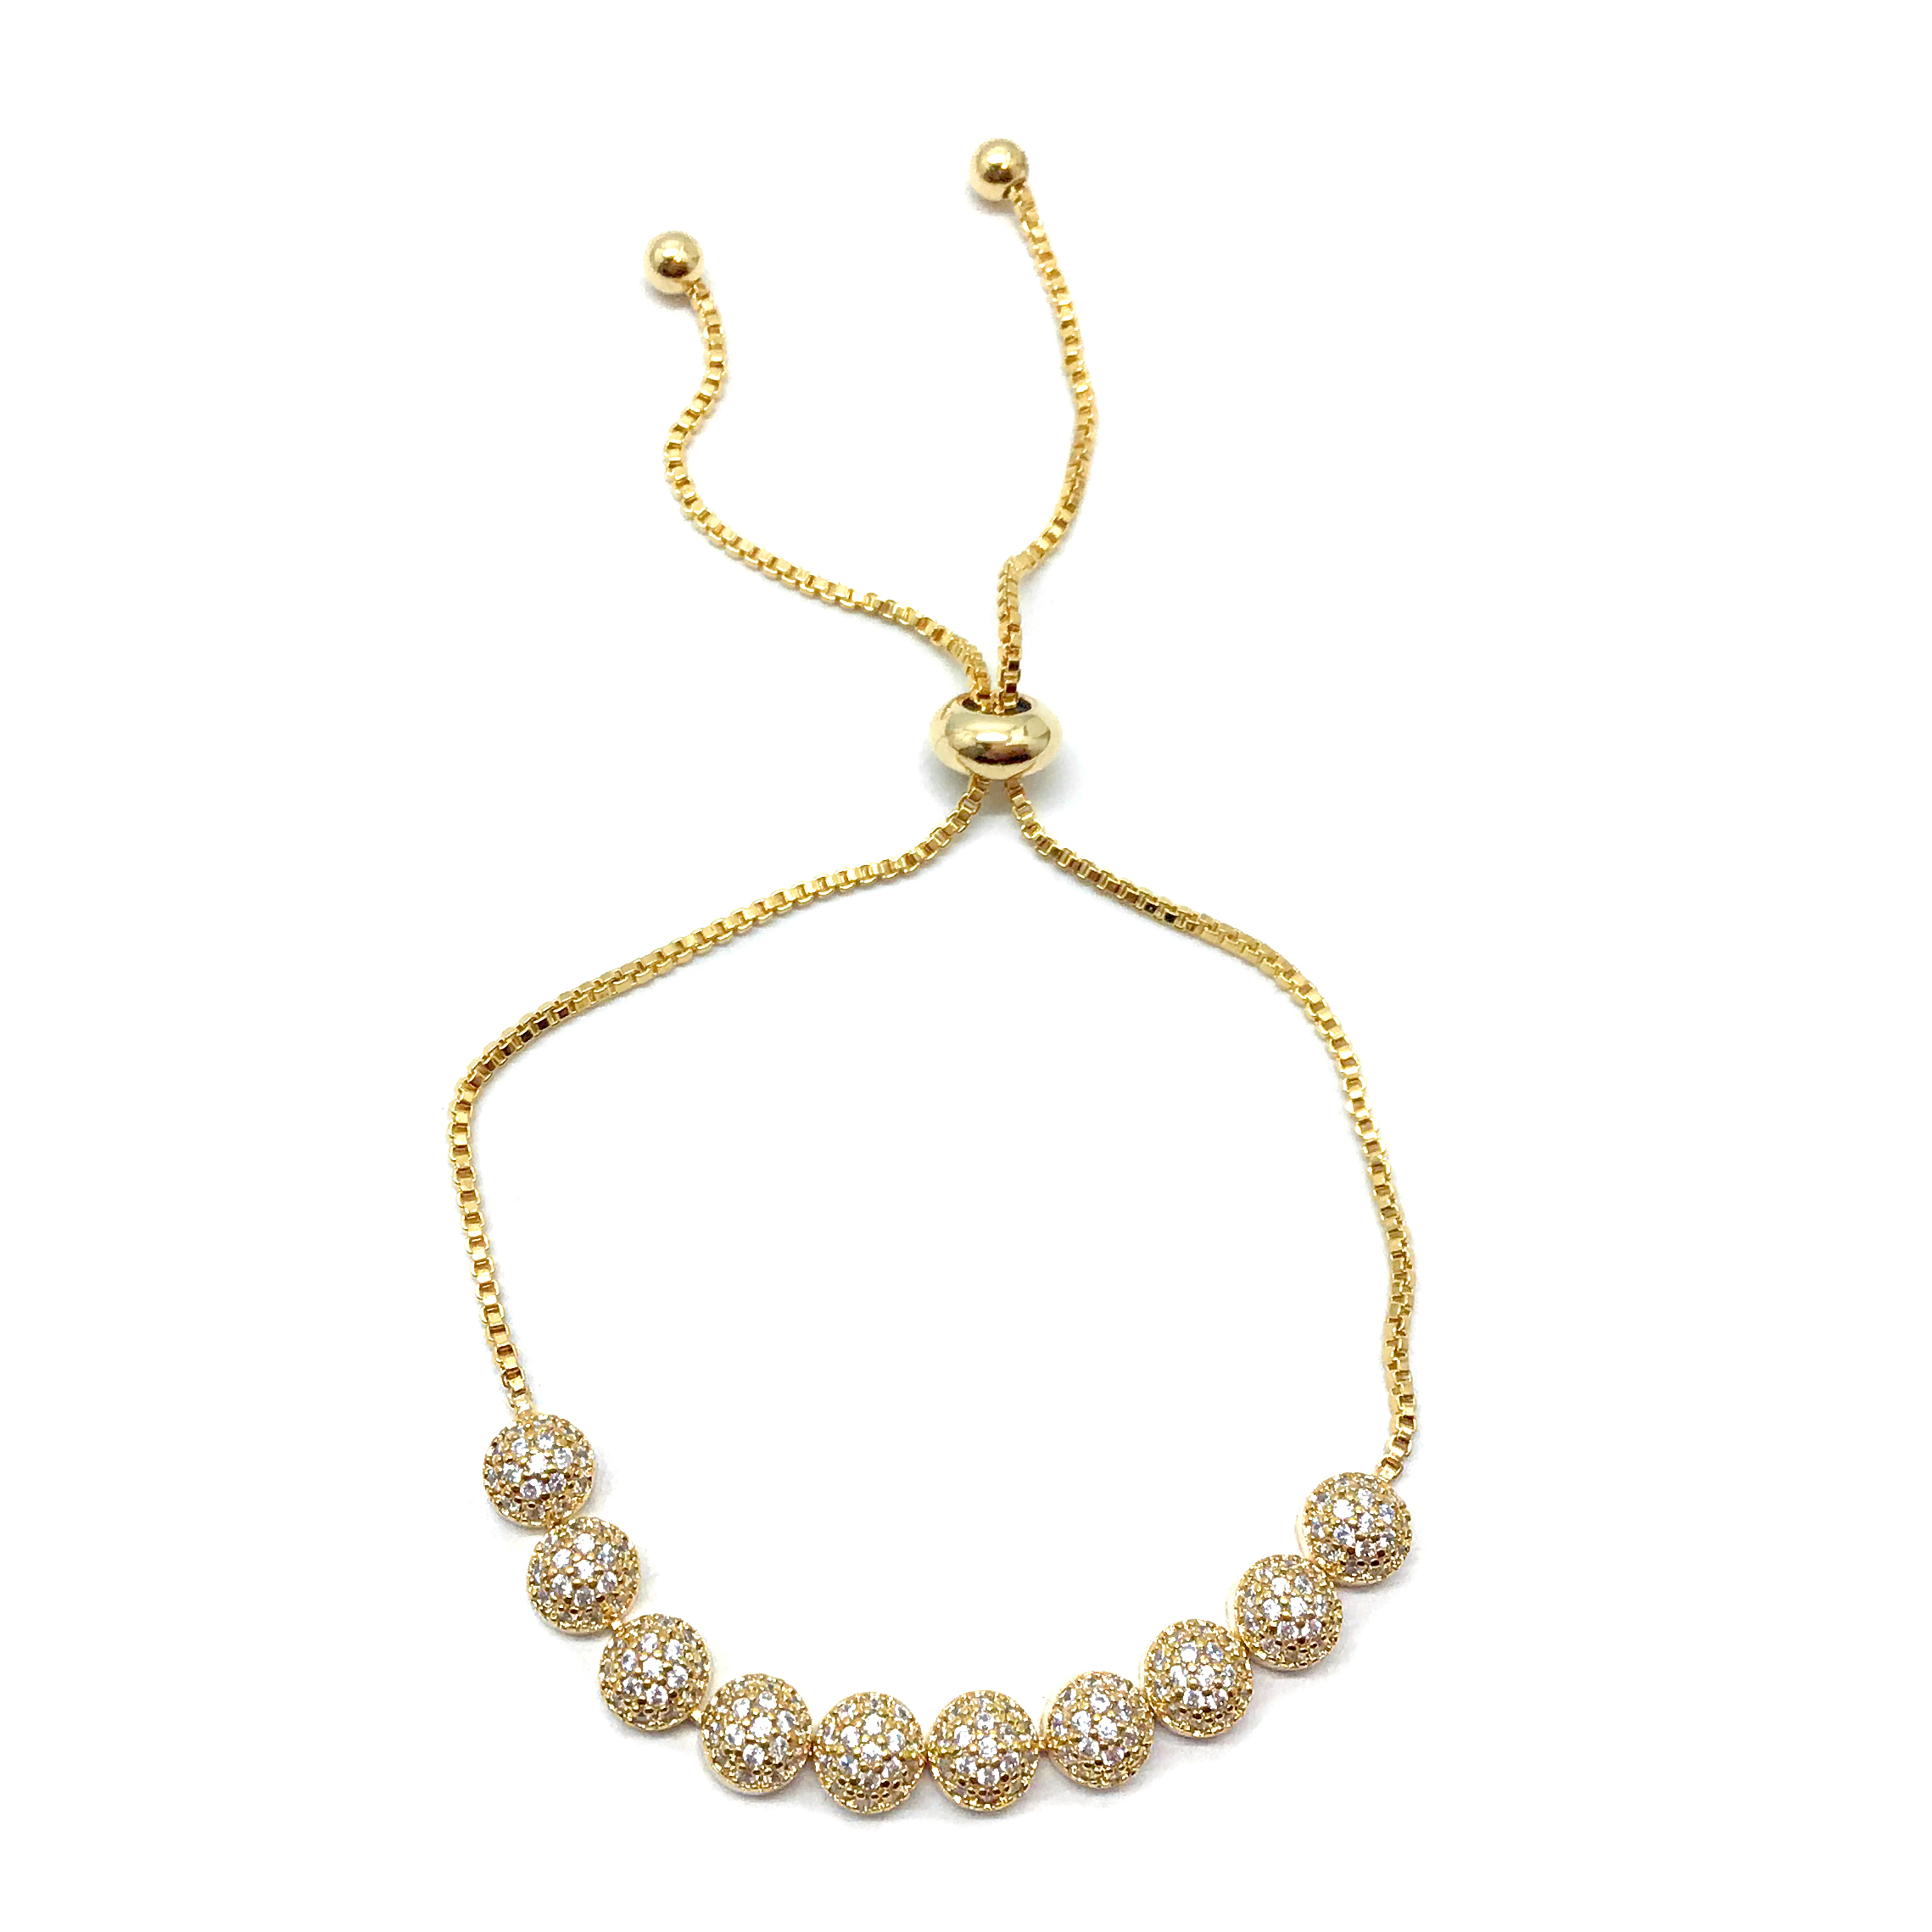 Gold Bracelet For Bride|Keira|Jeanette Maree|Shop Online